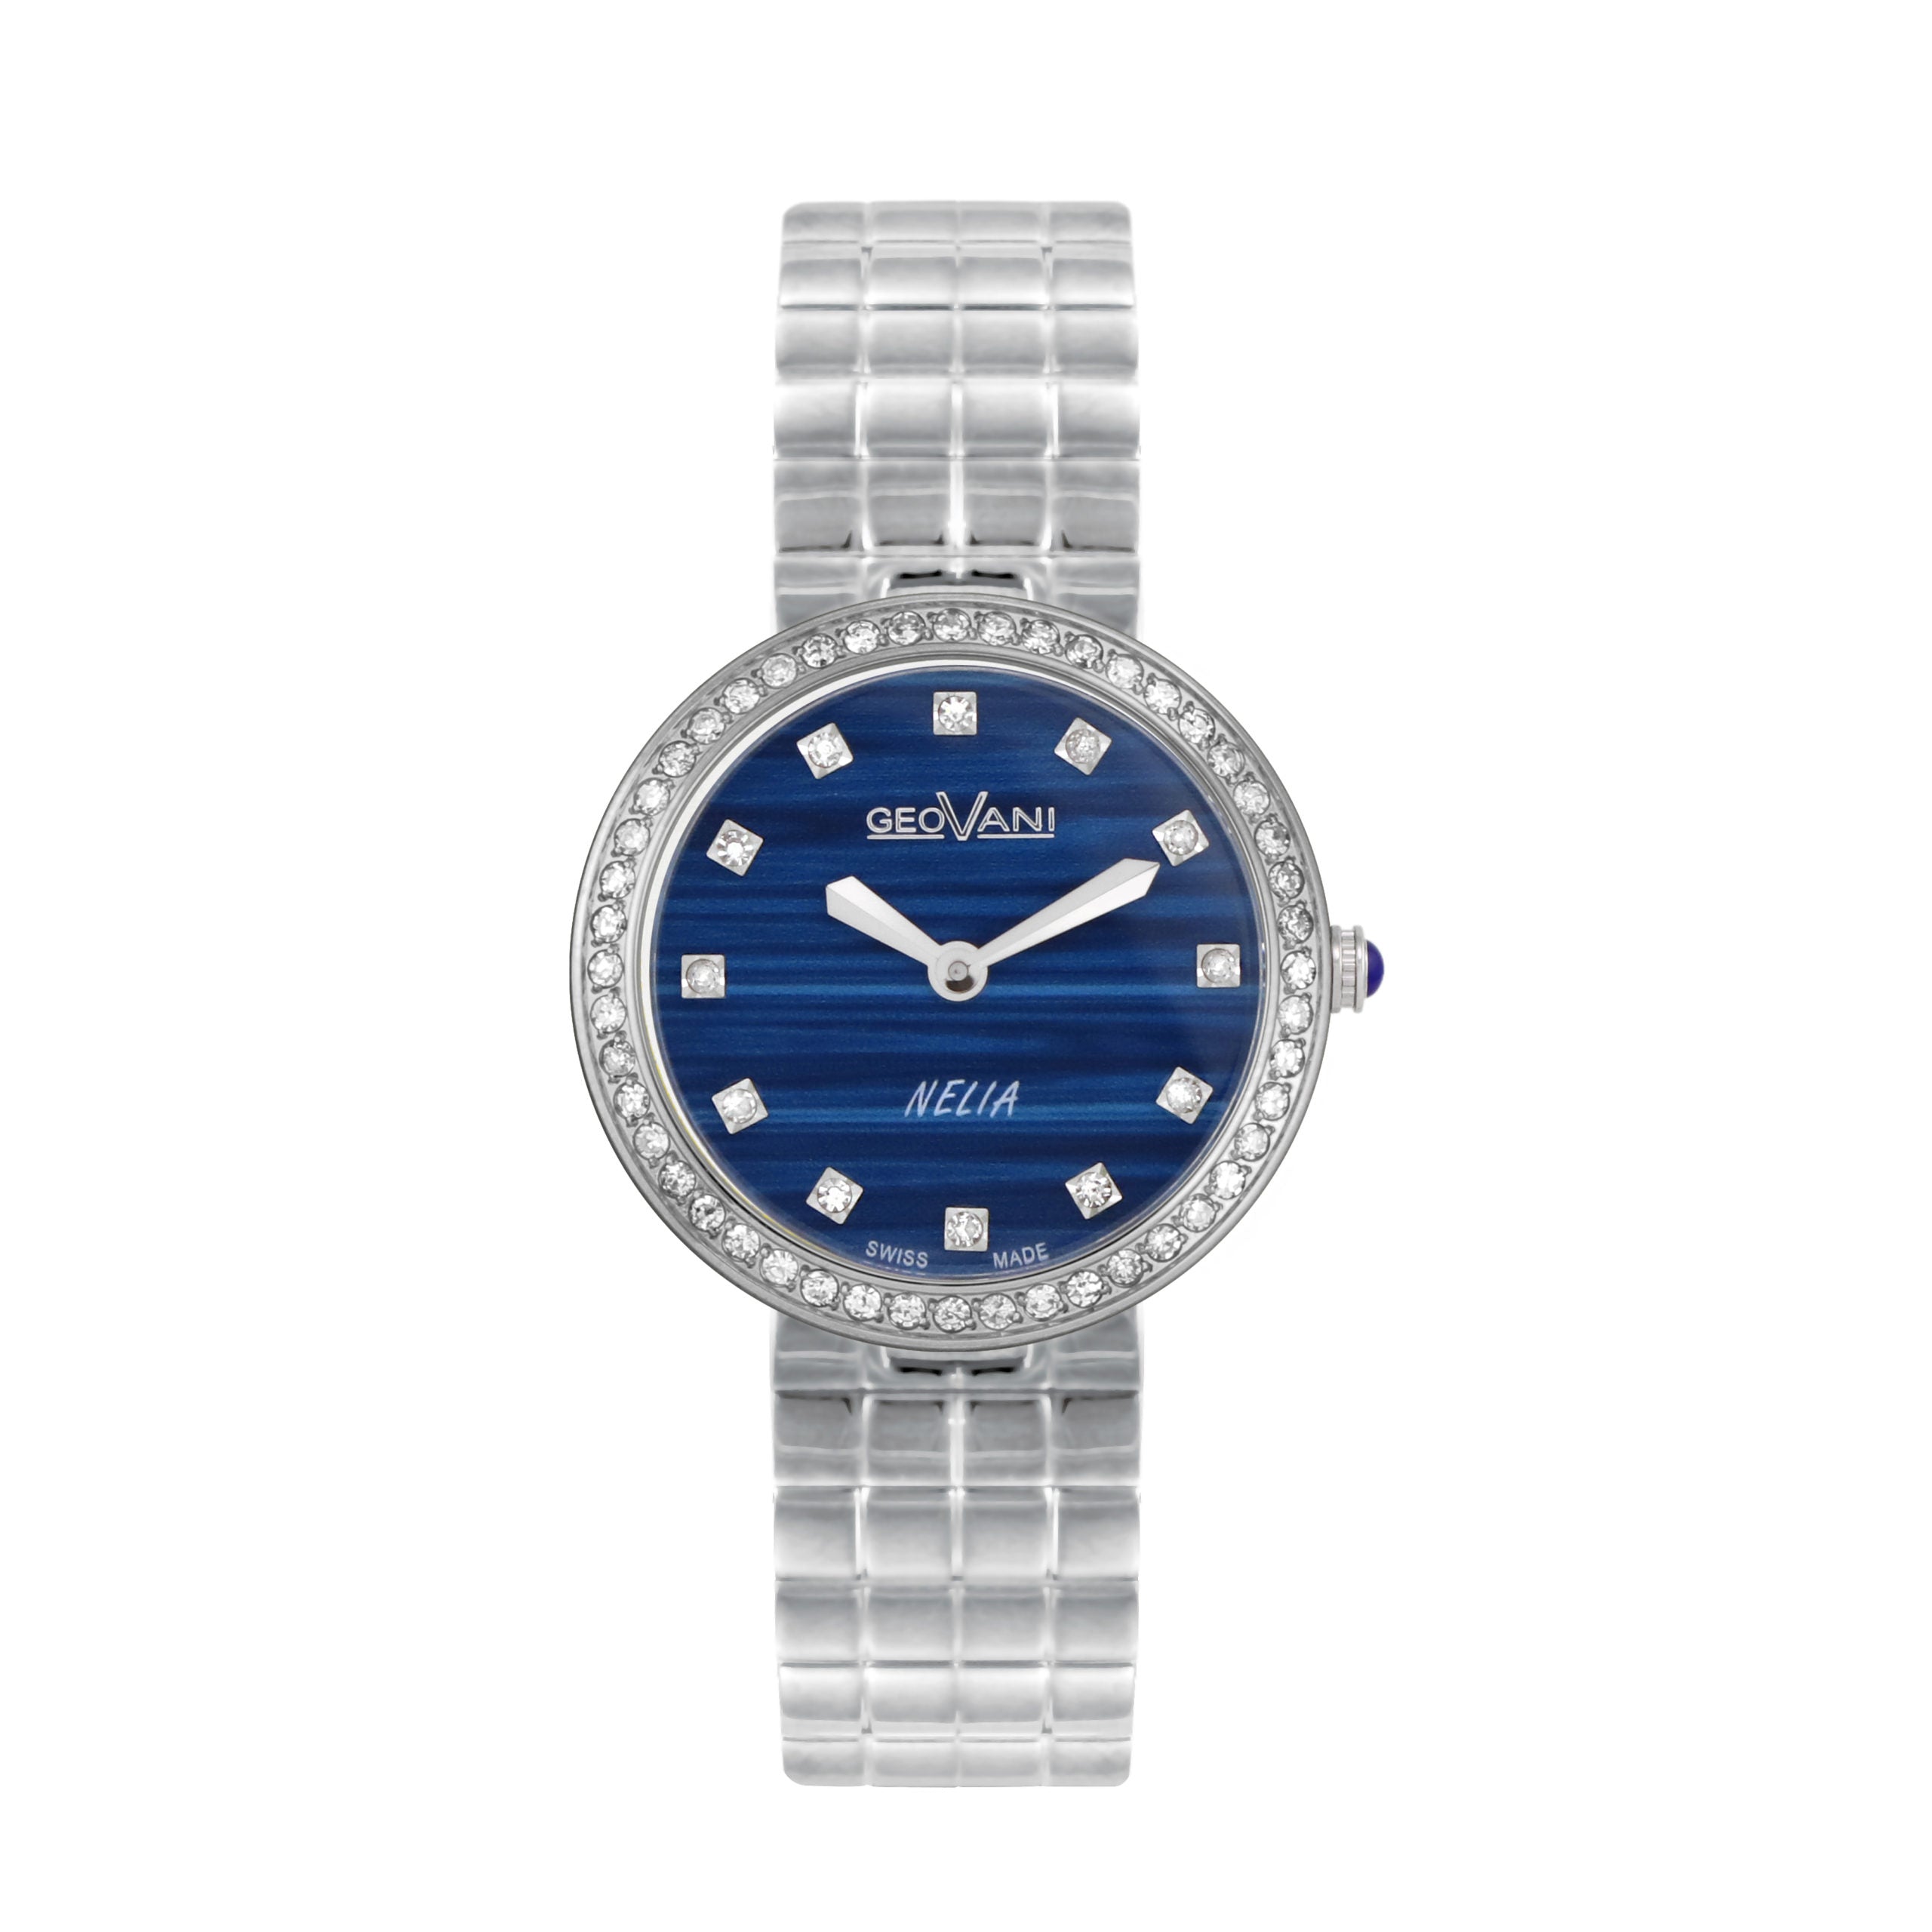 Giovanni Women's Swiss Quartz Watch with Blue Dial - GEO-0026